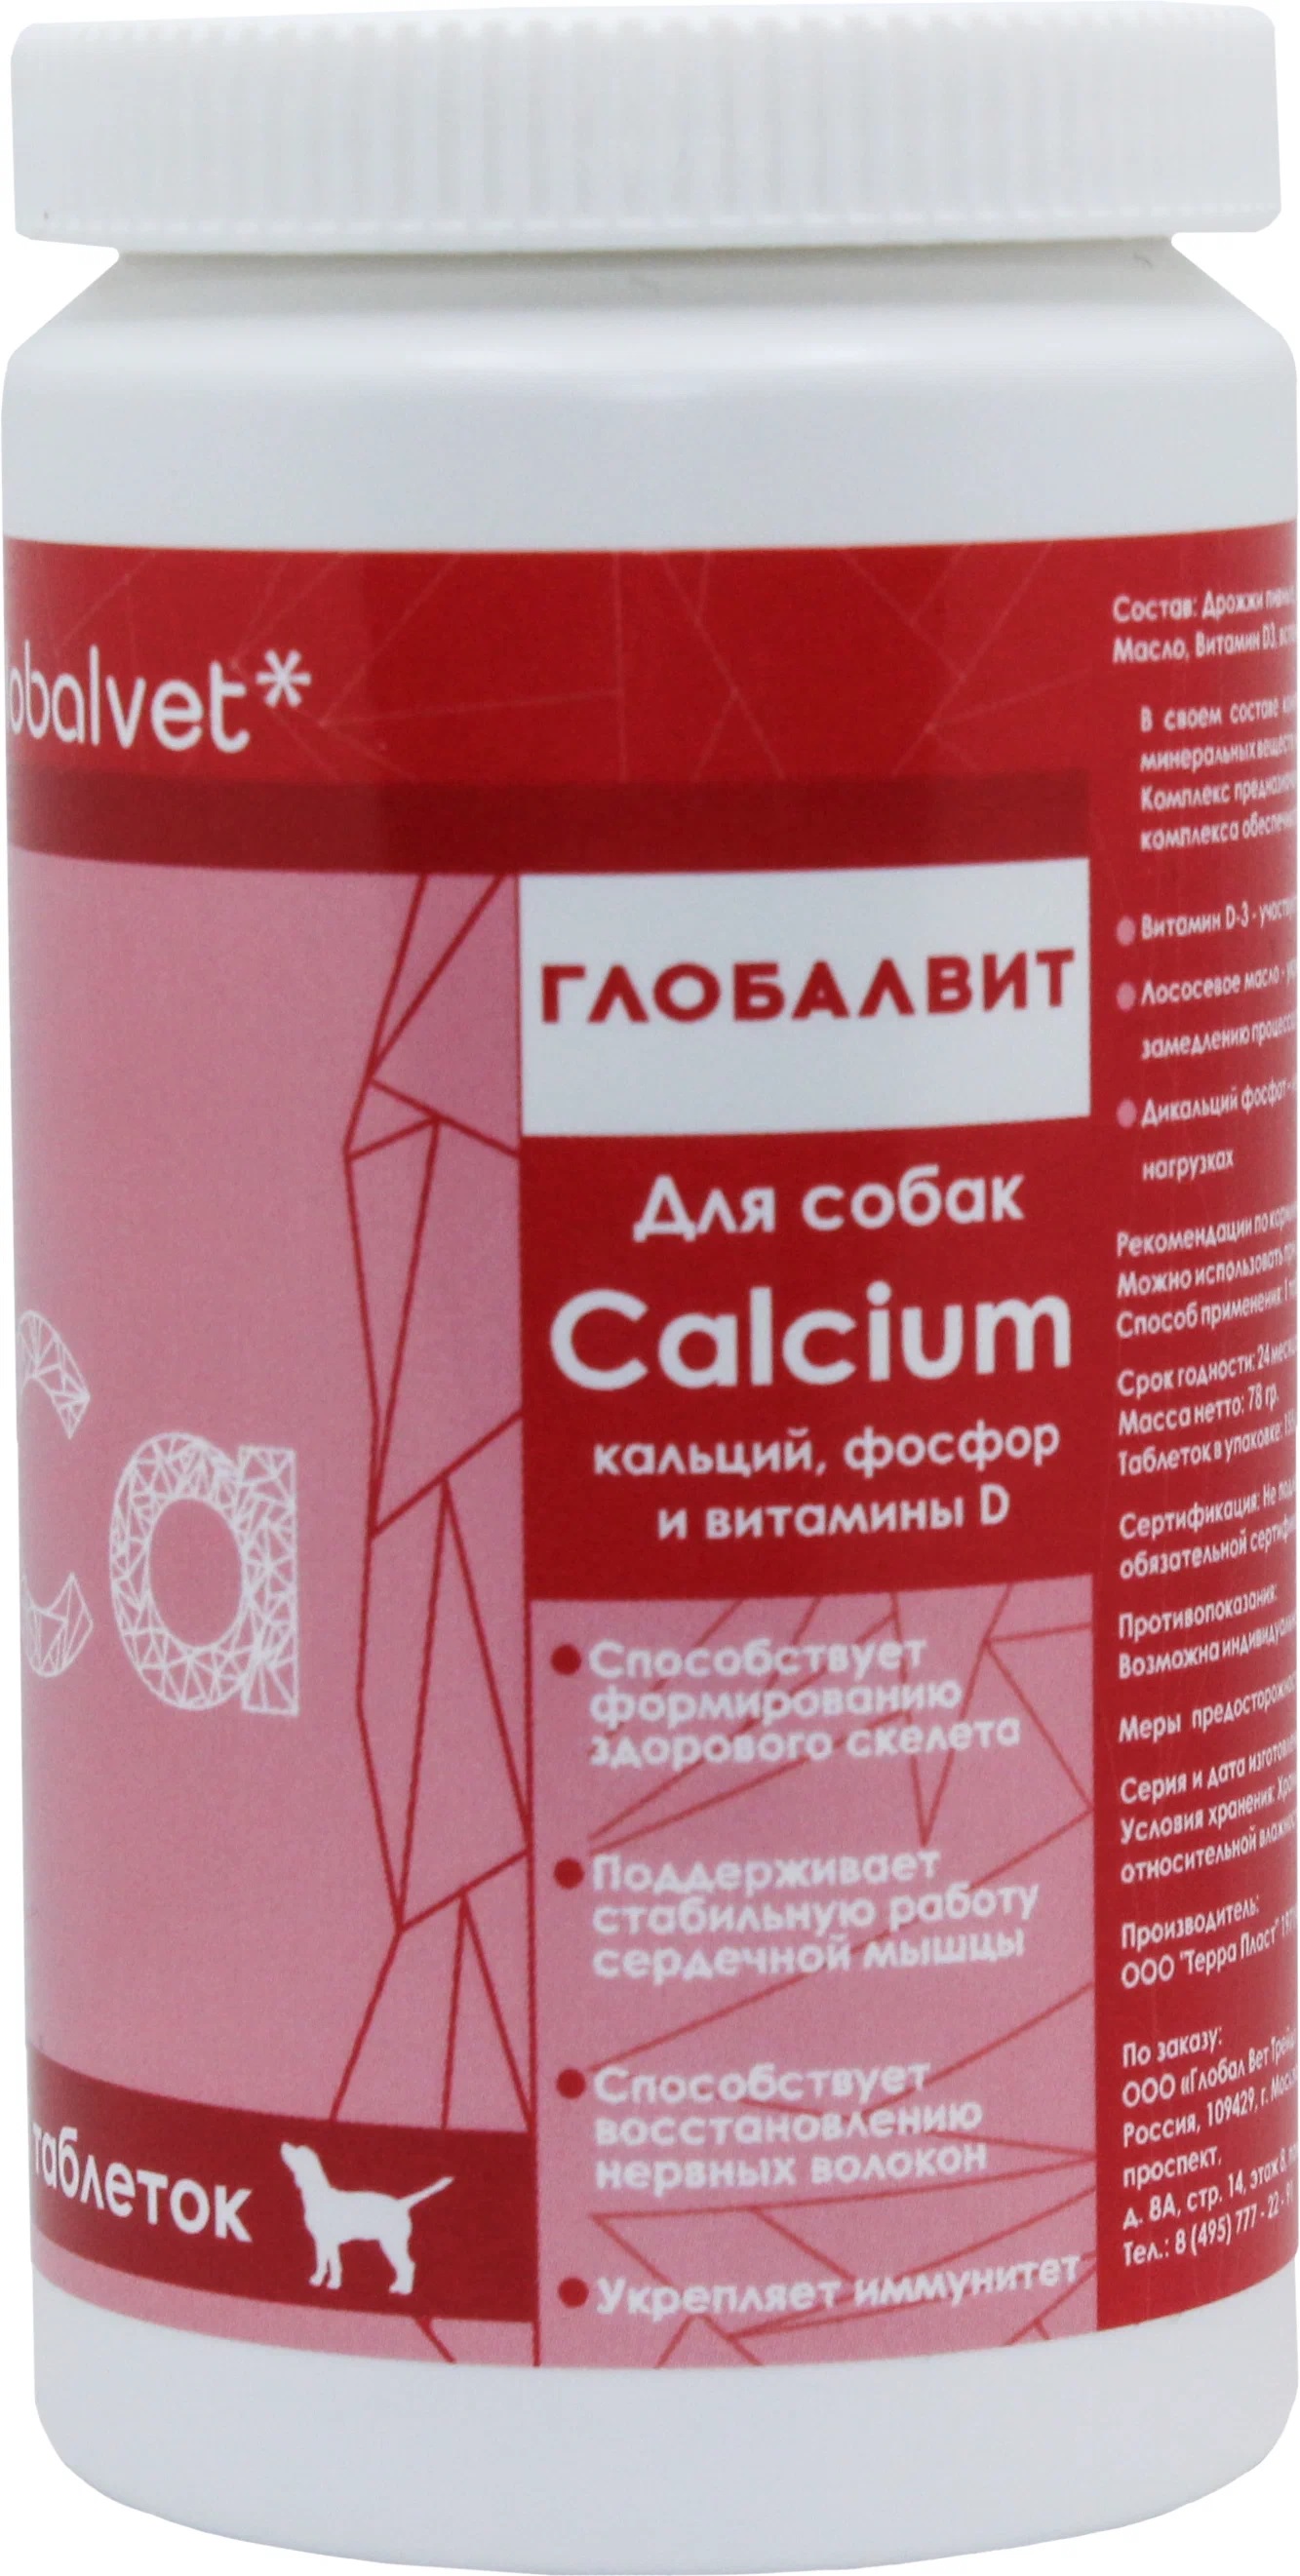 Globalvet Calcium д/собак